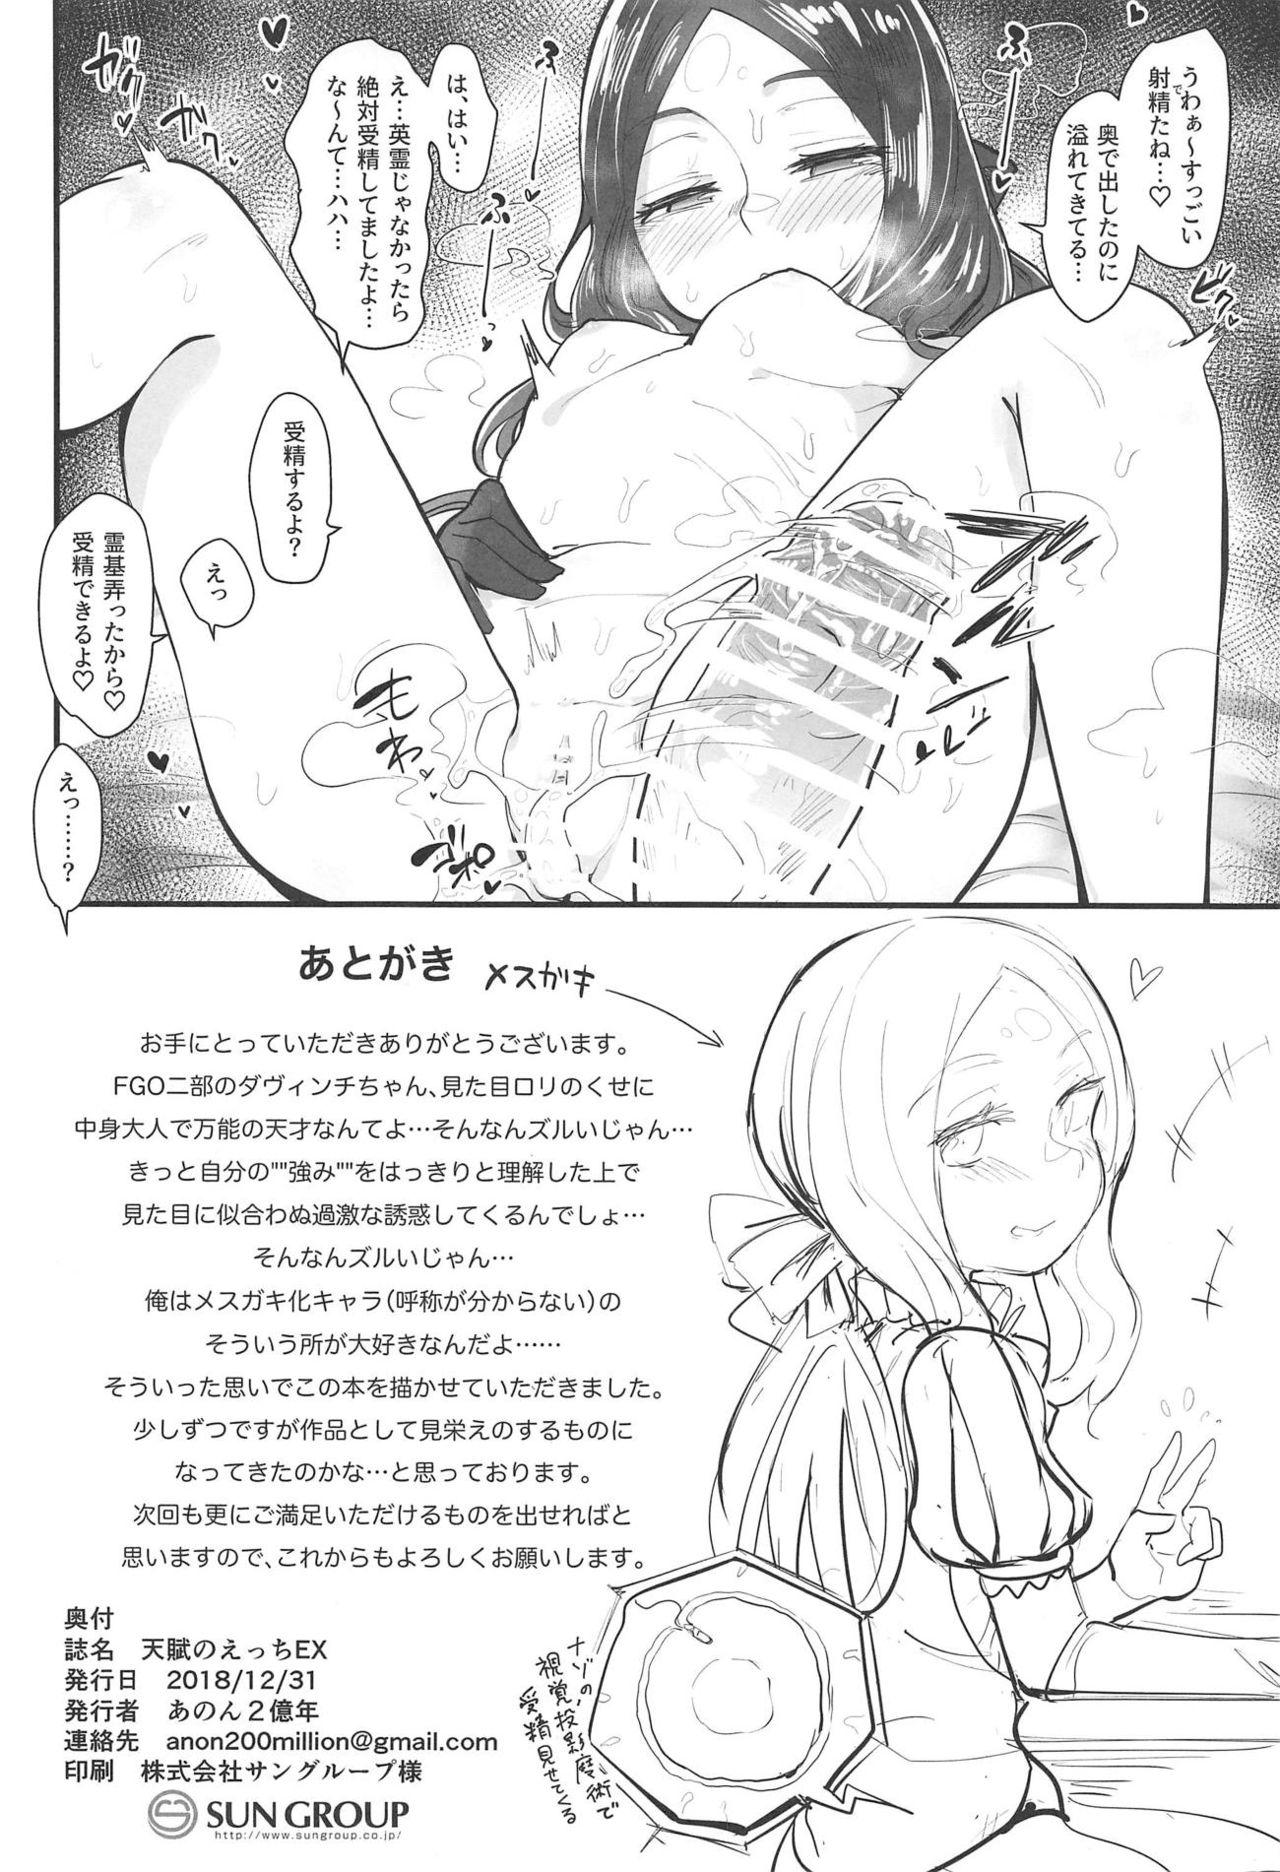 Amature Allure Tenpu no Ecchi EX - Fate grand order English - Page 21